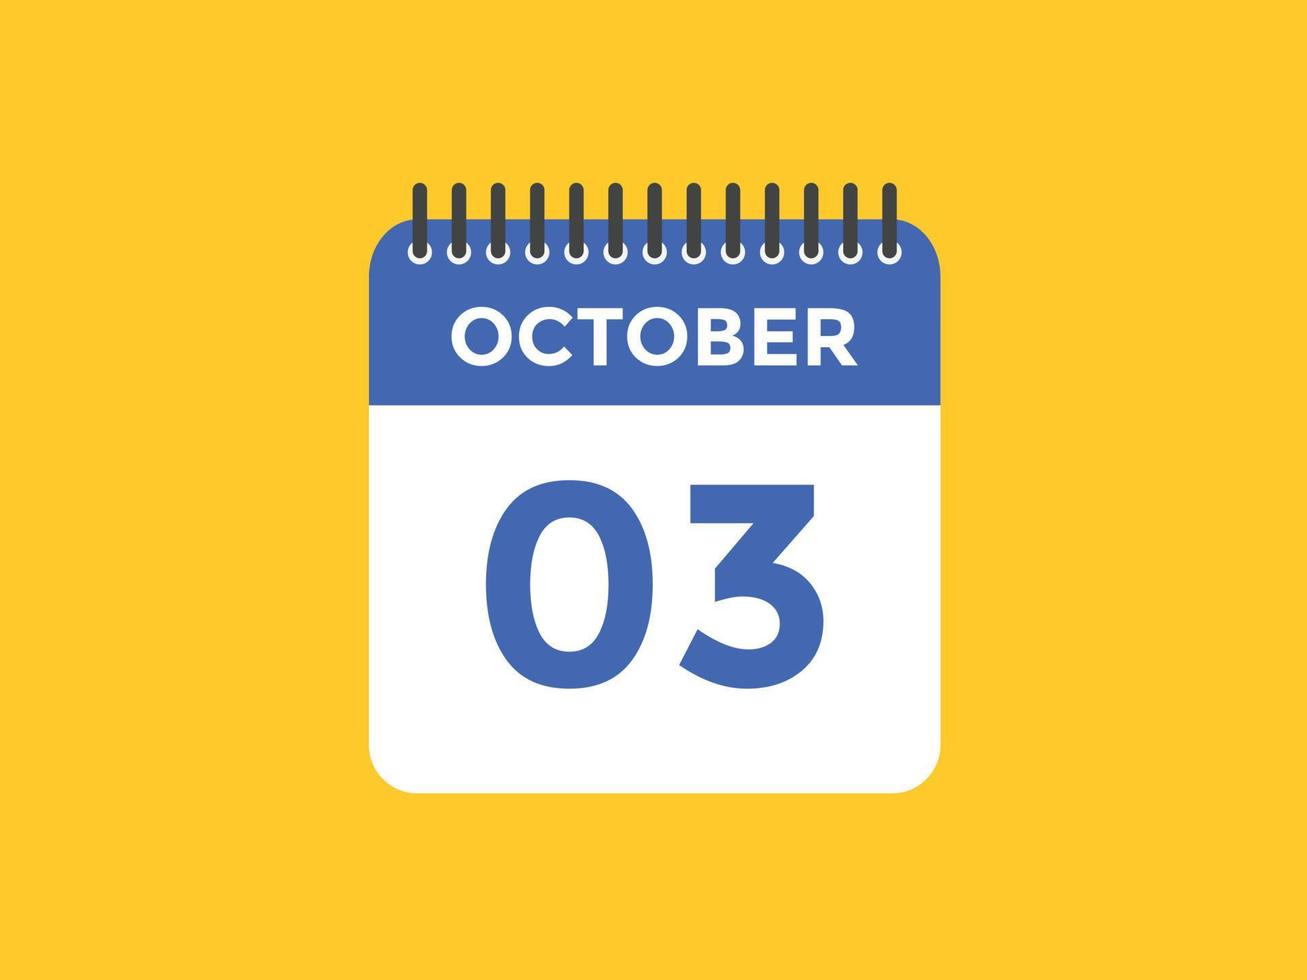 ottobre 3 calendario promemoria. 3 ° ottobre quotidiano calendario icona modello. calendario 3 ° ottobre icona design modello. vettore illustrazione